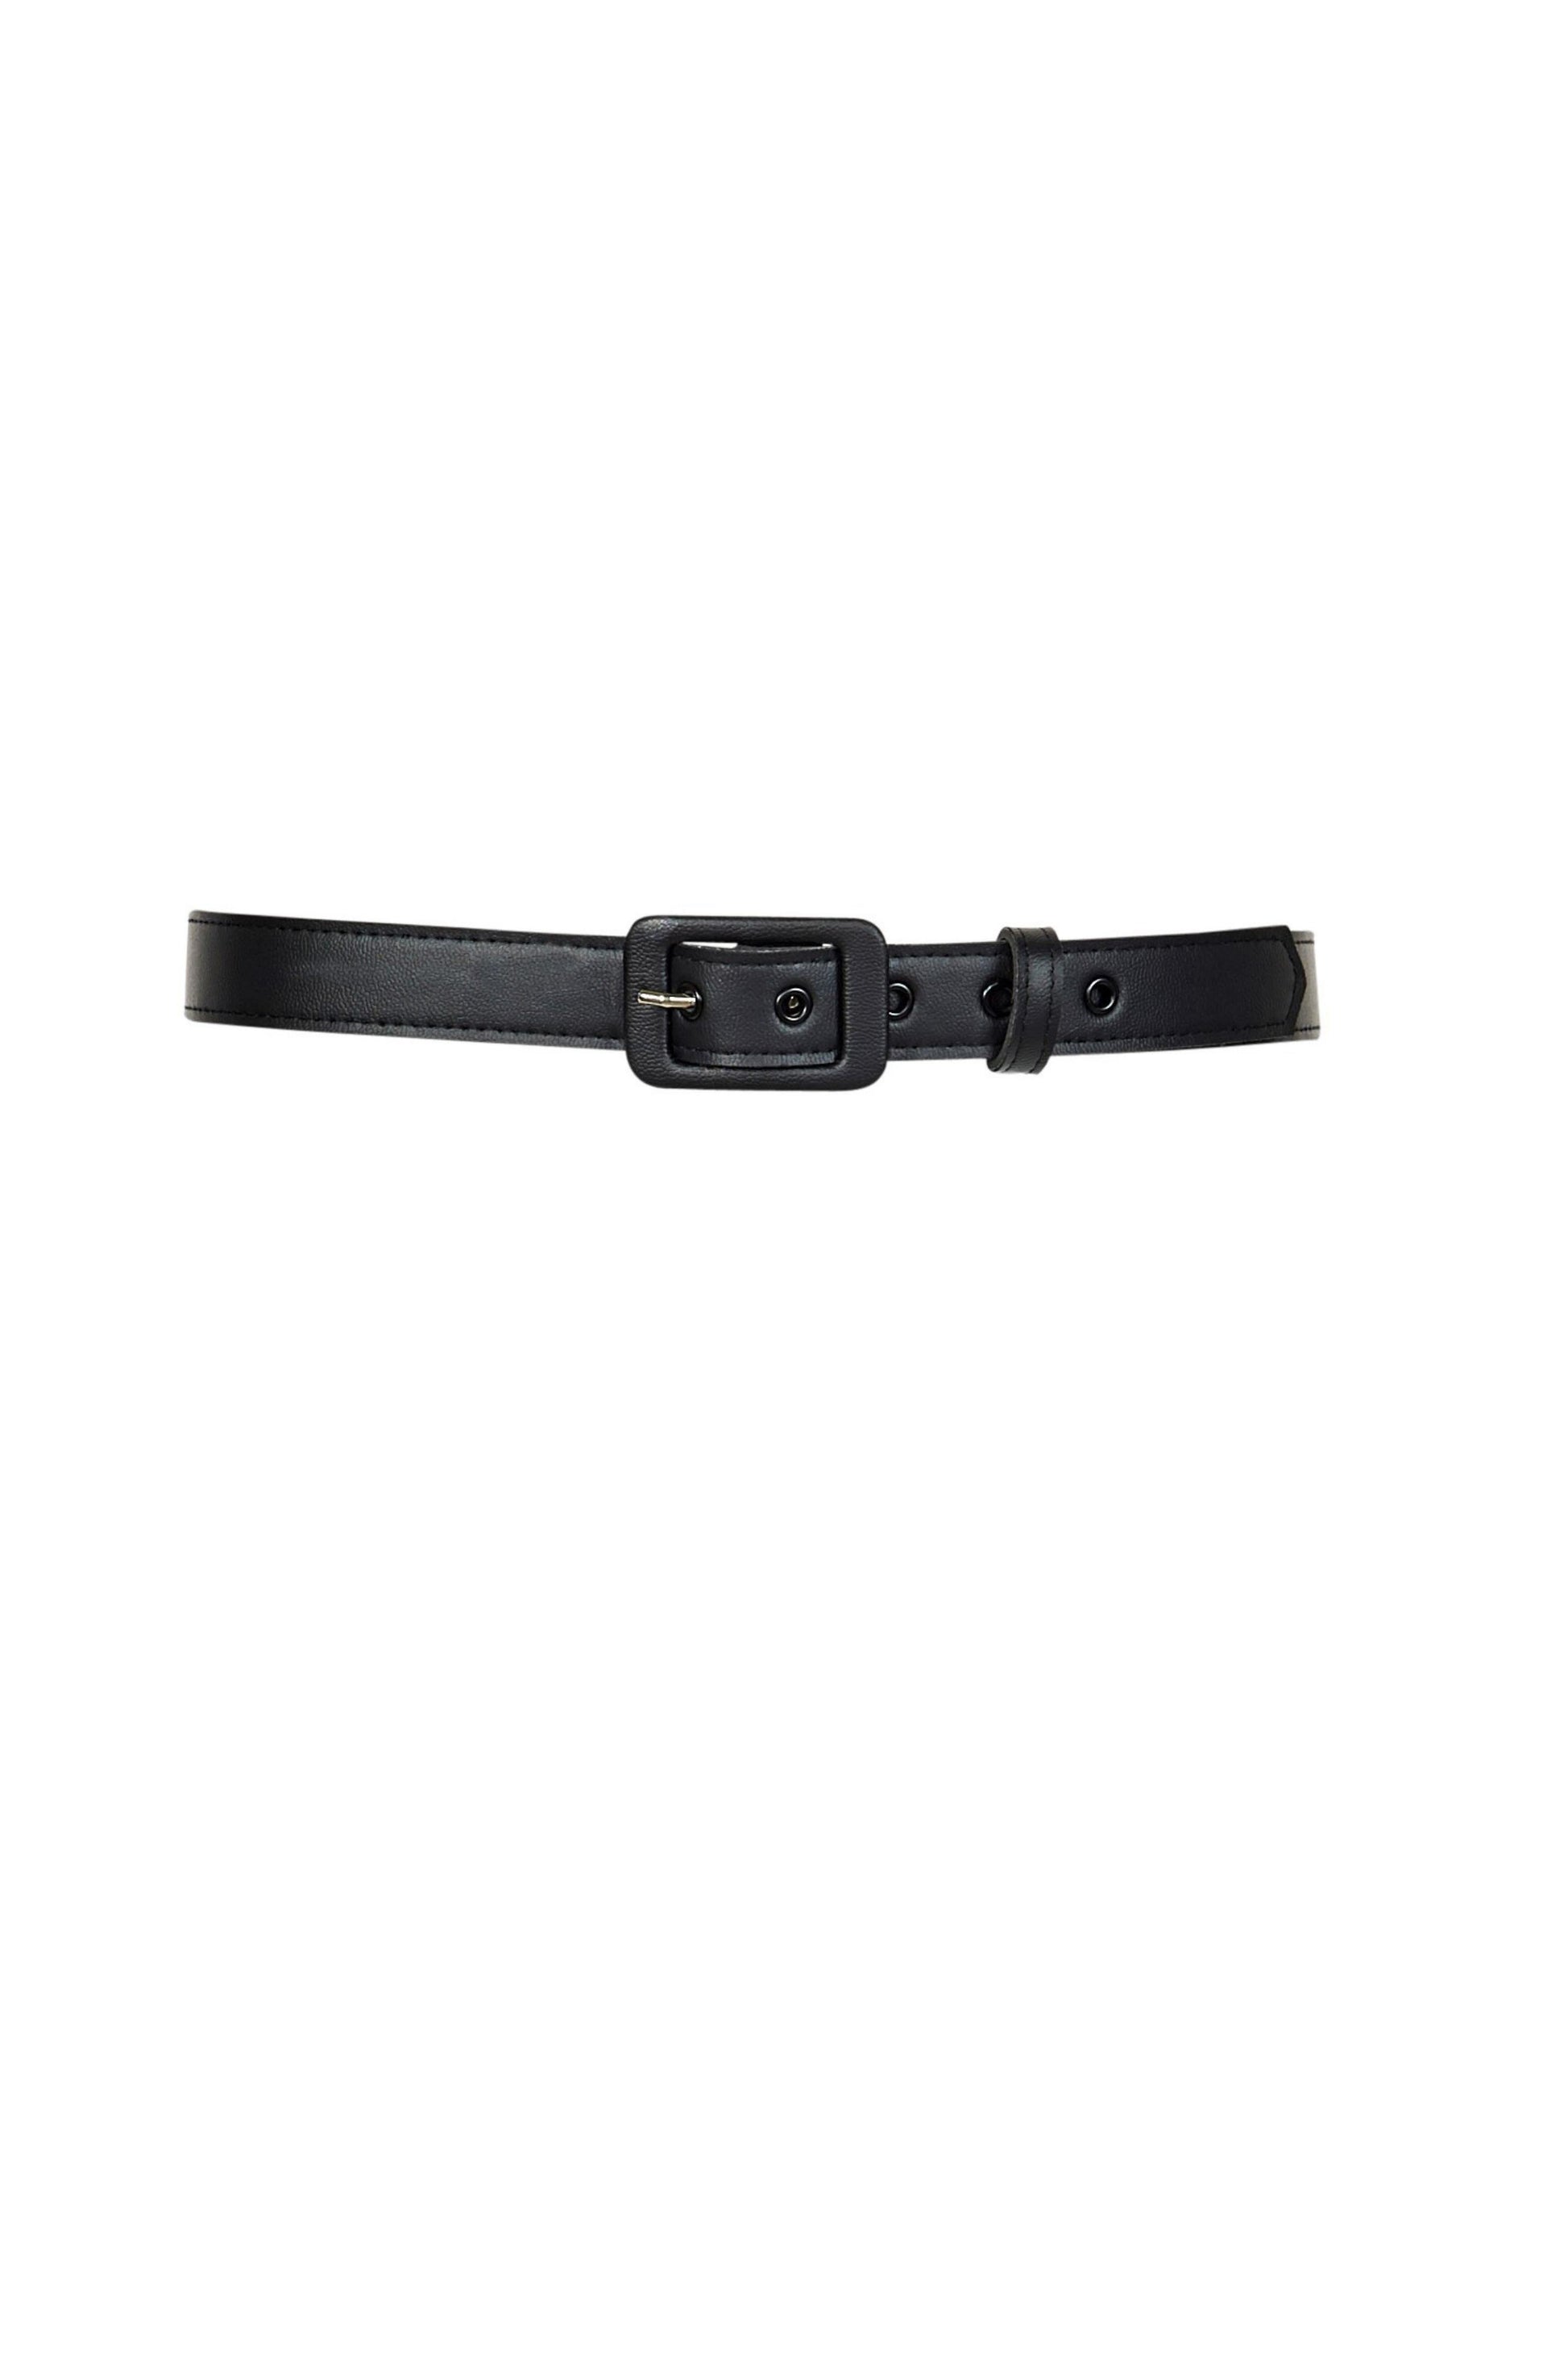 1 Inch Grommet Belt in Black Faux Leather